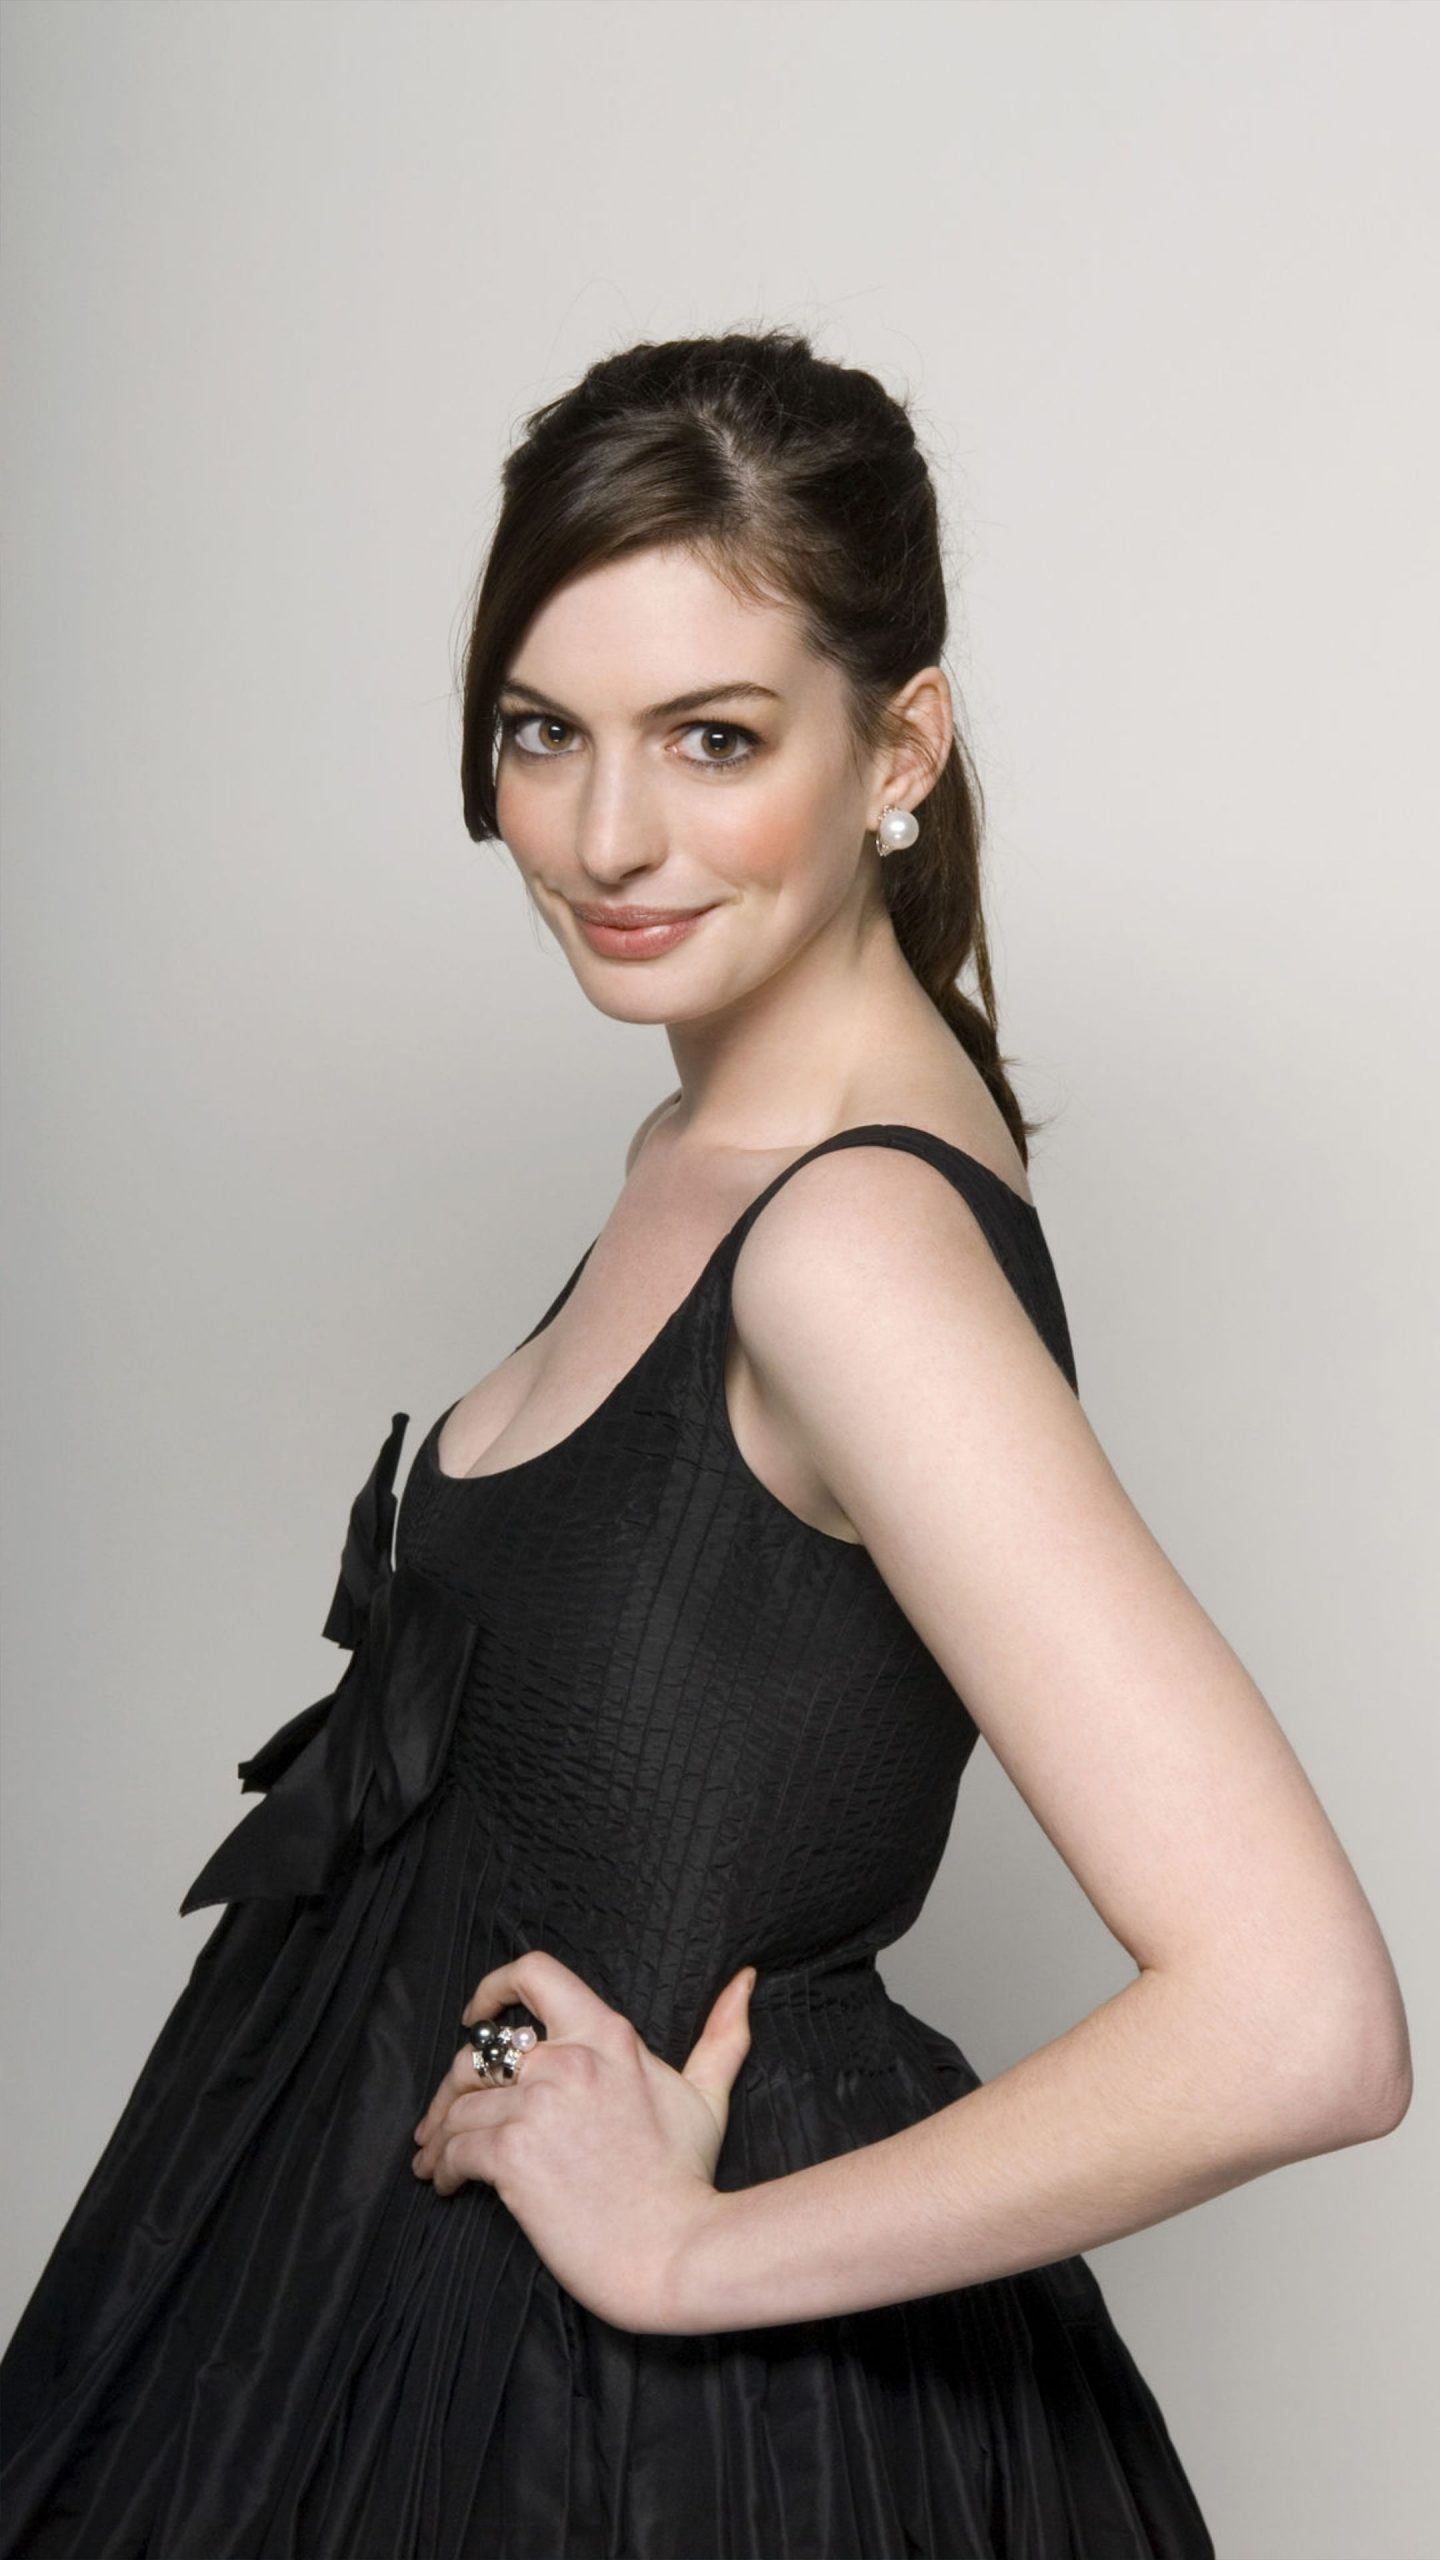 Anne Hathaway In Black Dress 2022 Photoshoot 4k Ultra Hd Mobile Wallpaper 0954